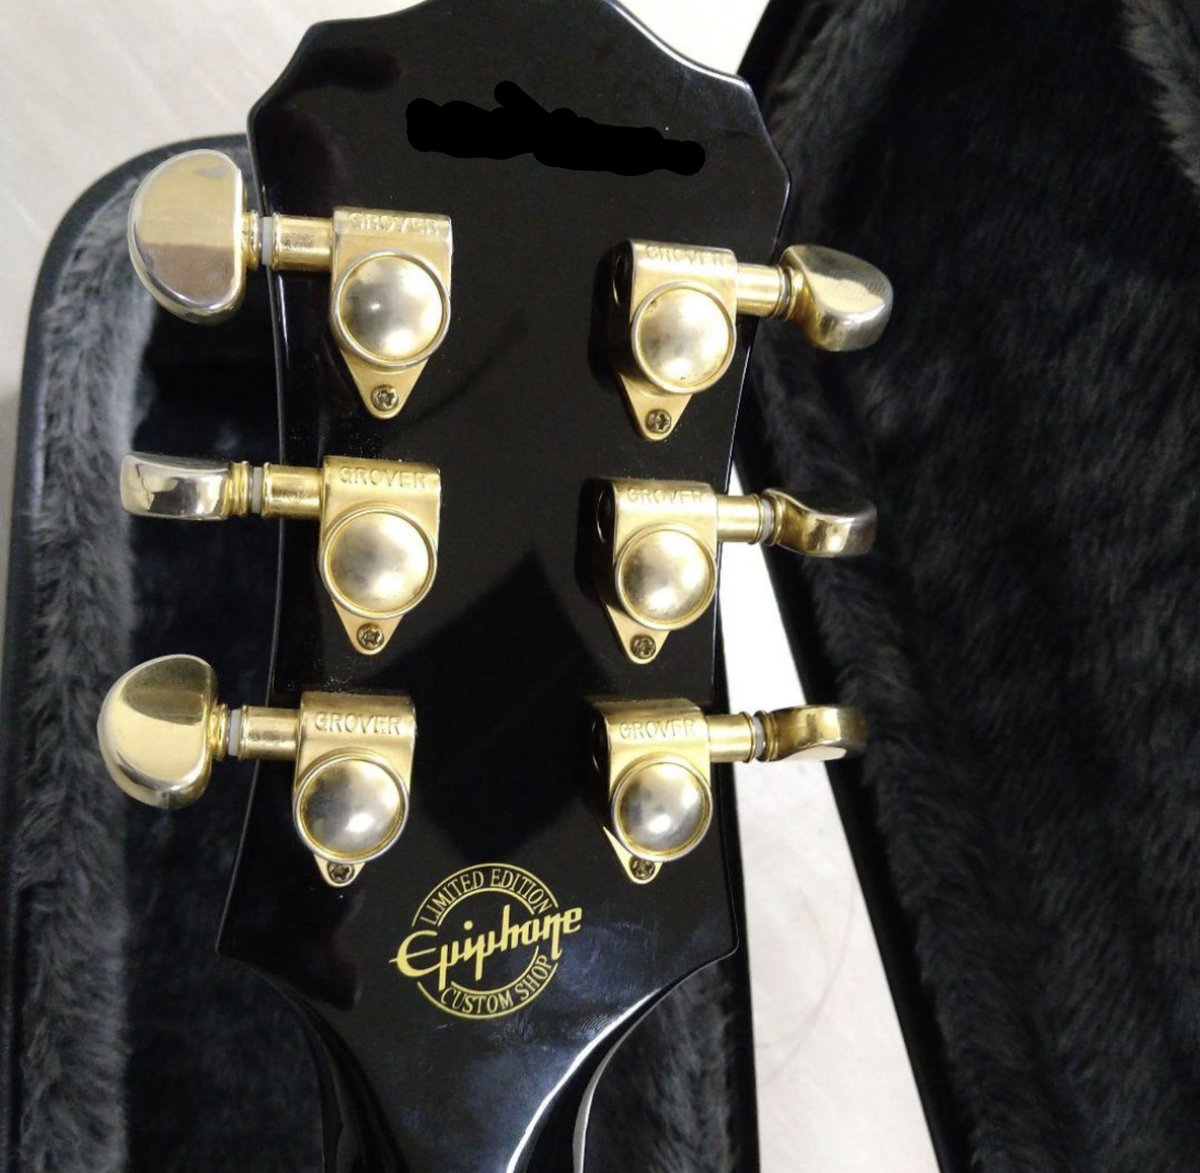 #名刺代わりにギターを一本
Epiphone Customshop製 レスポール Custom エボニー指板
撮影モデルの小物用に購入しましたが、爆音♬でかき鳴らすと王道のレスポールサウンド！
コスパ高めの１本🎸